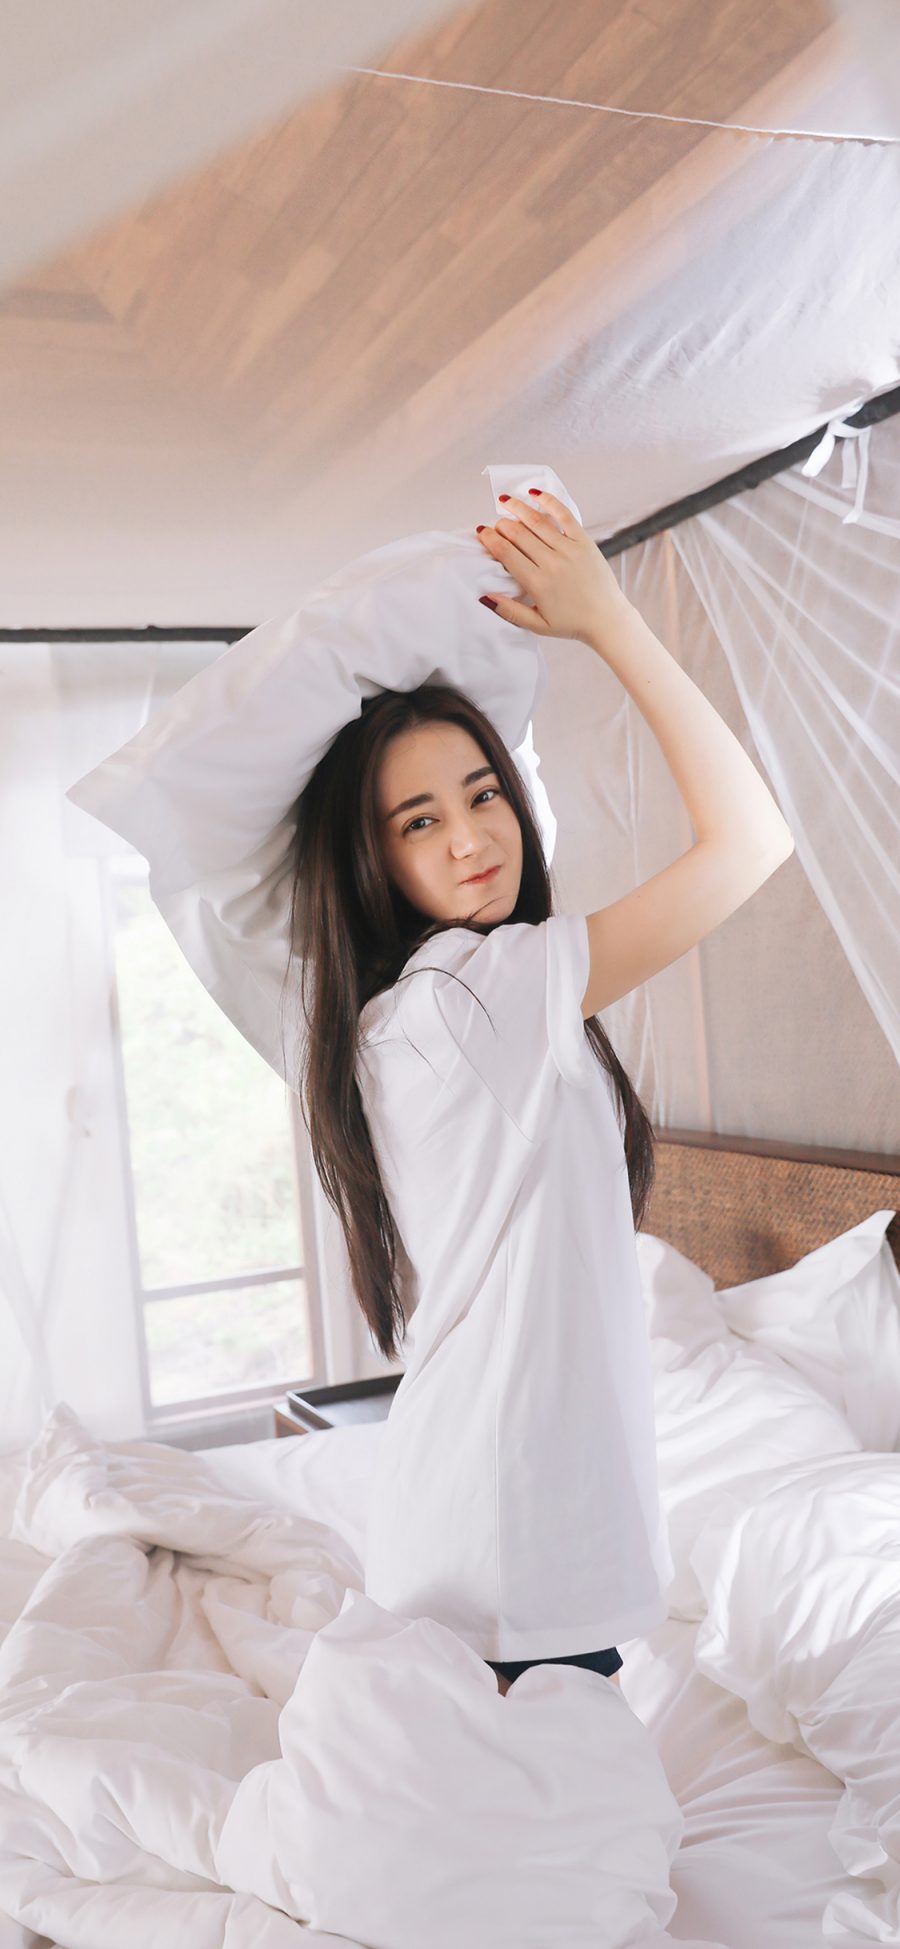 [2436×1125]迪丽热巴 演员 明星 艺人 床 白色 枕头 苹果手机美女壁纸图片